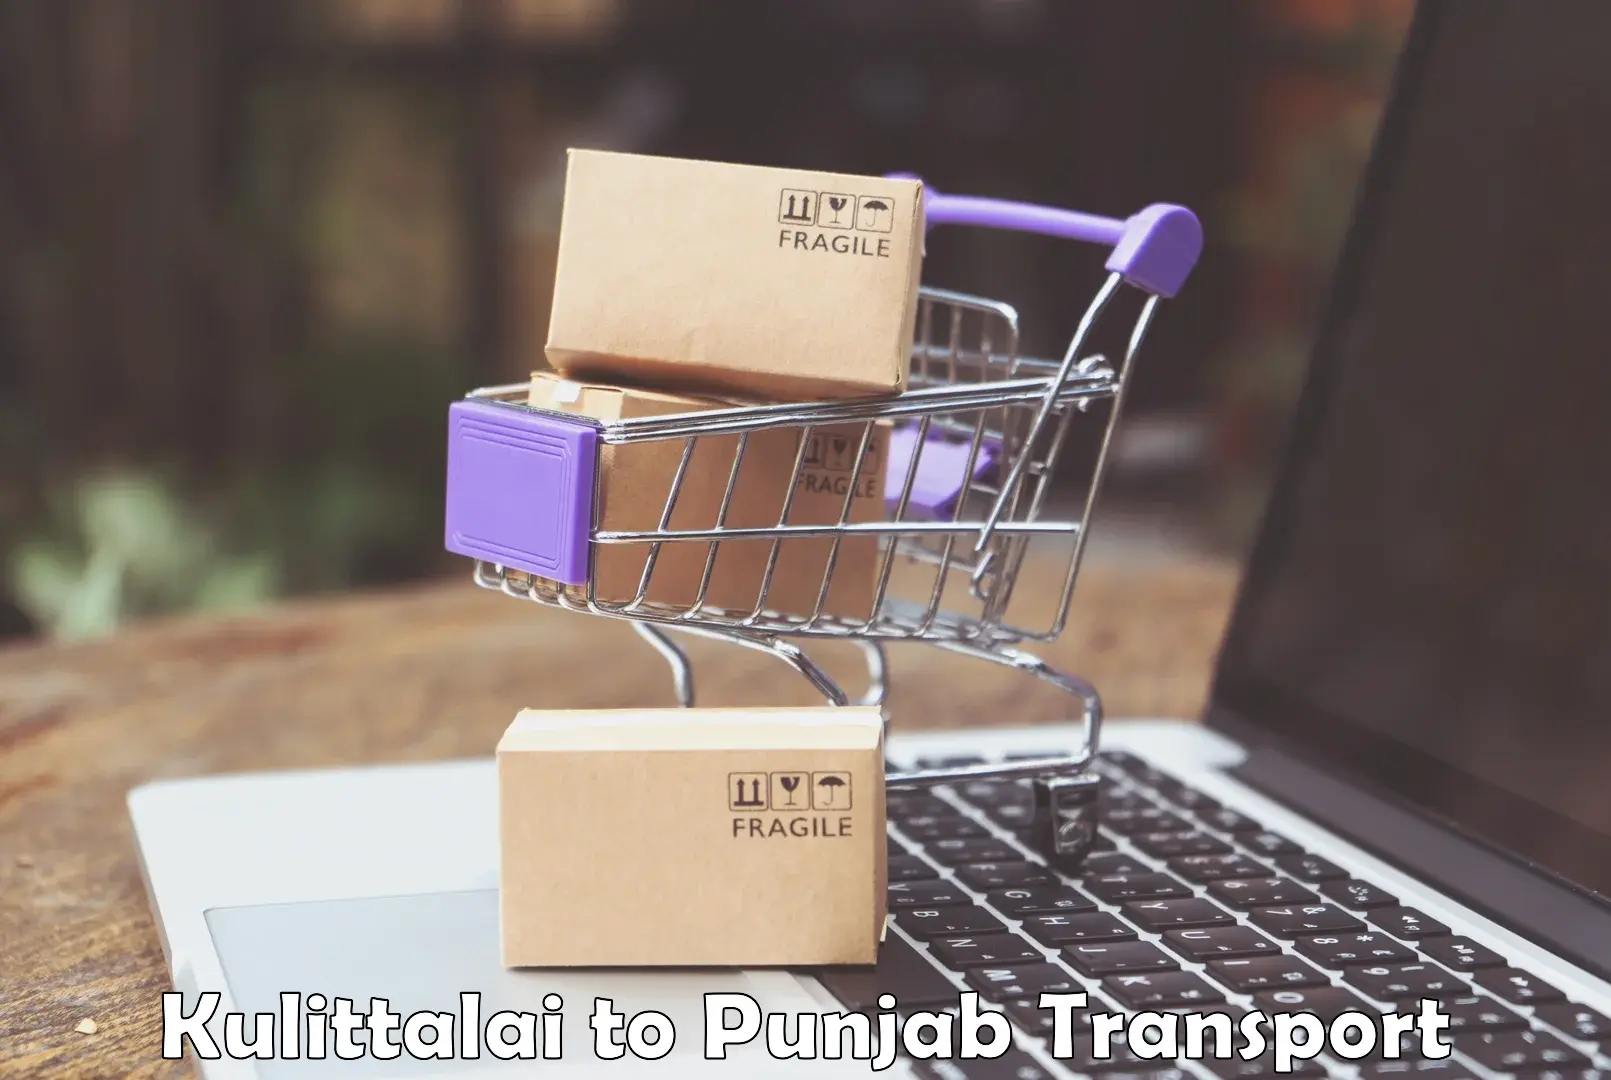 Goods transport services Kulittalai to Punjab